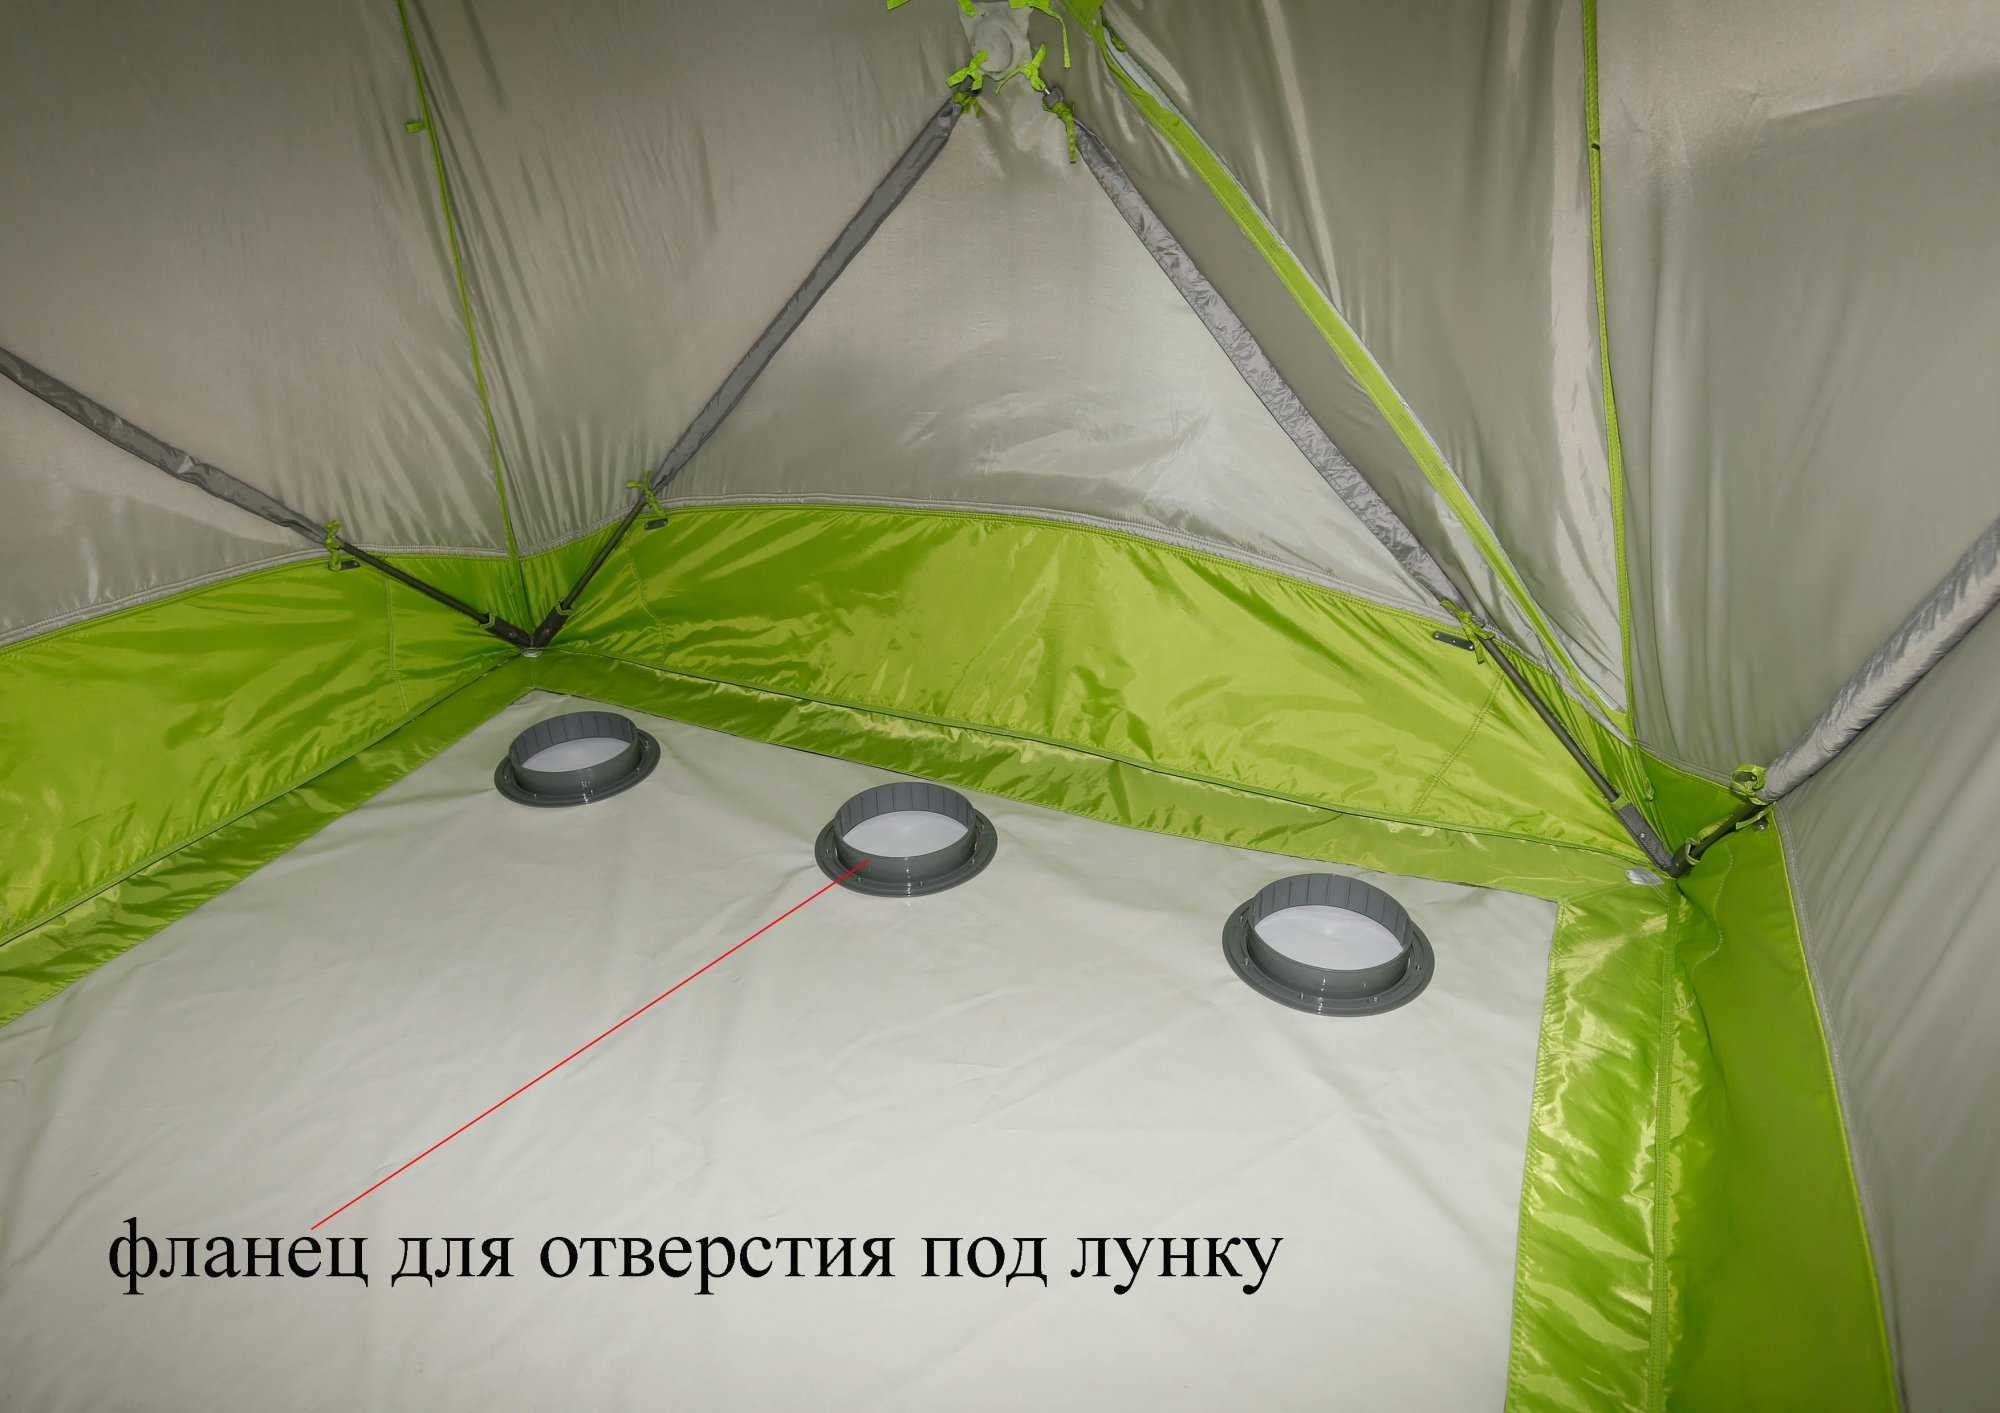 Палатка своими руками: выкройки, схемы, проекты и идеи пошива палатки для детей и взрослых (85 фото лучших моделей)